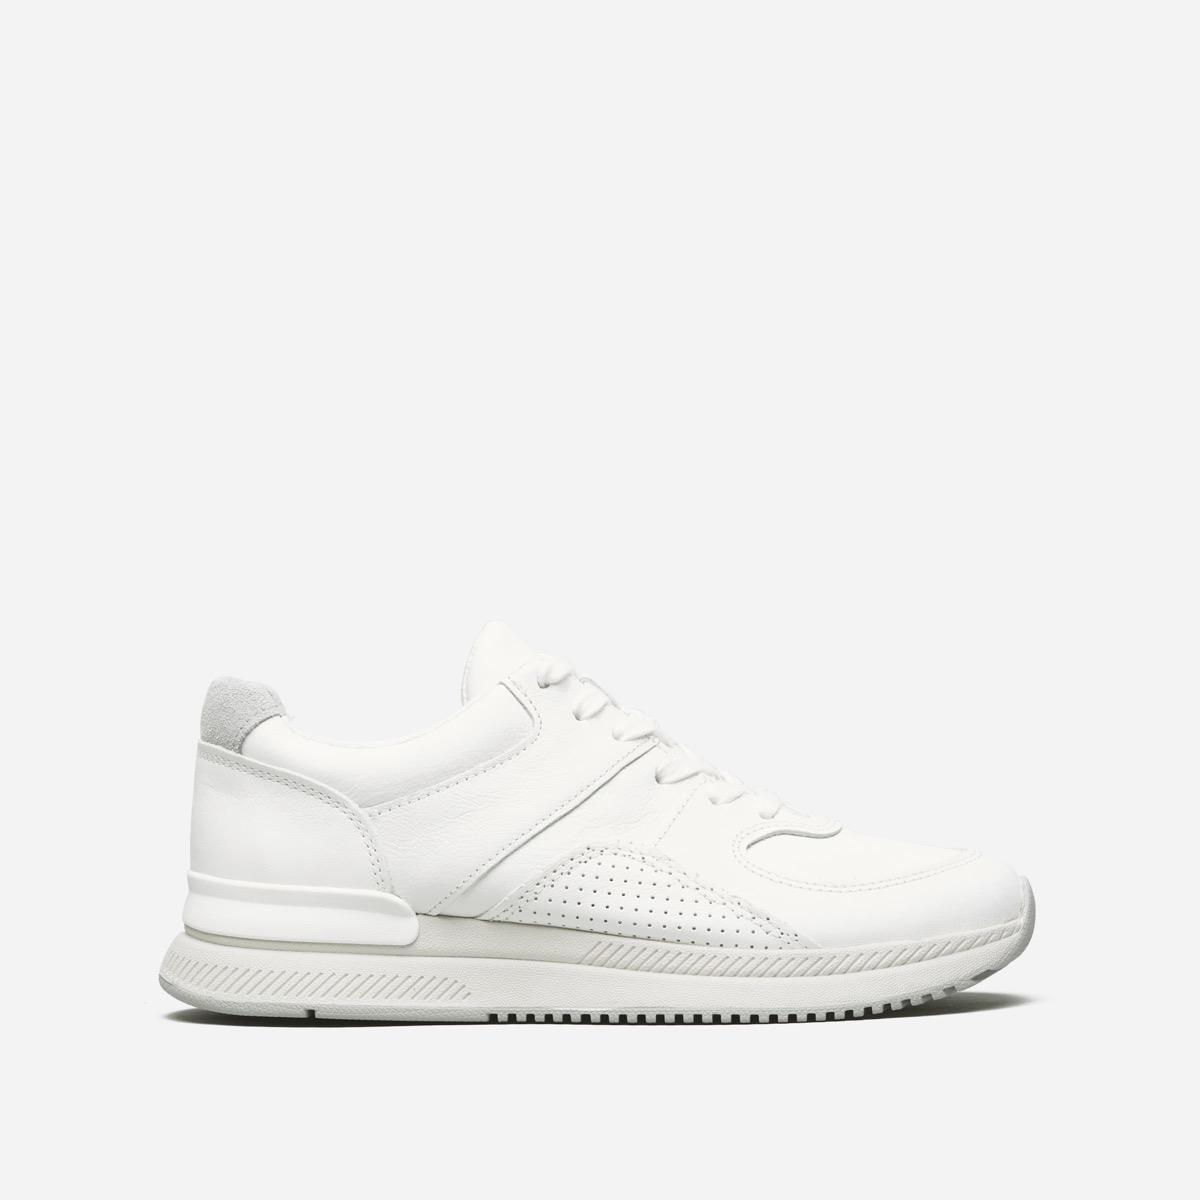 White sneaker on white background